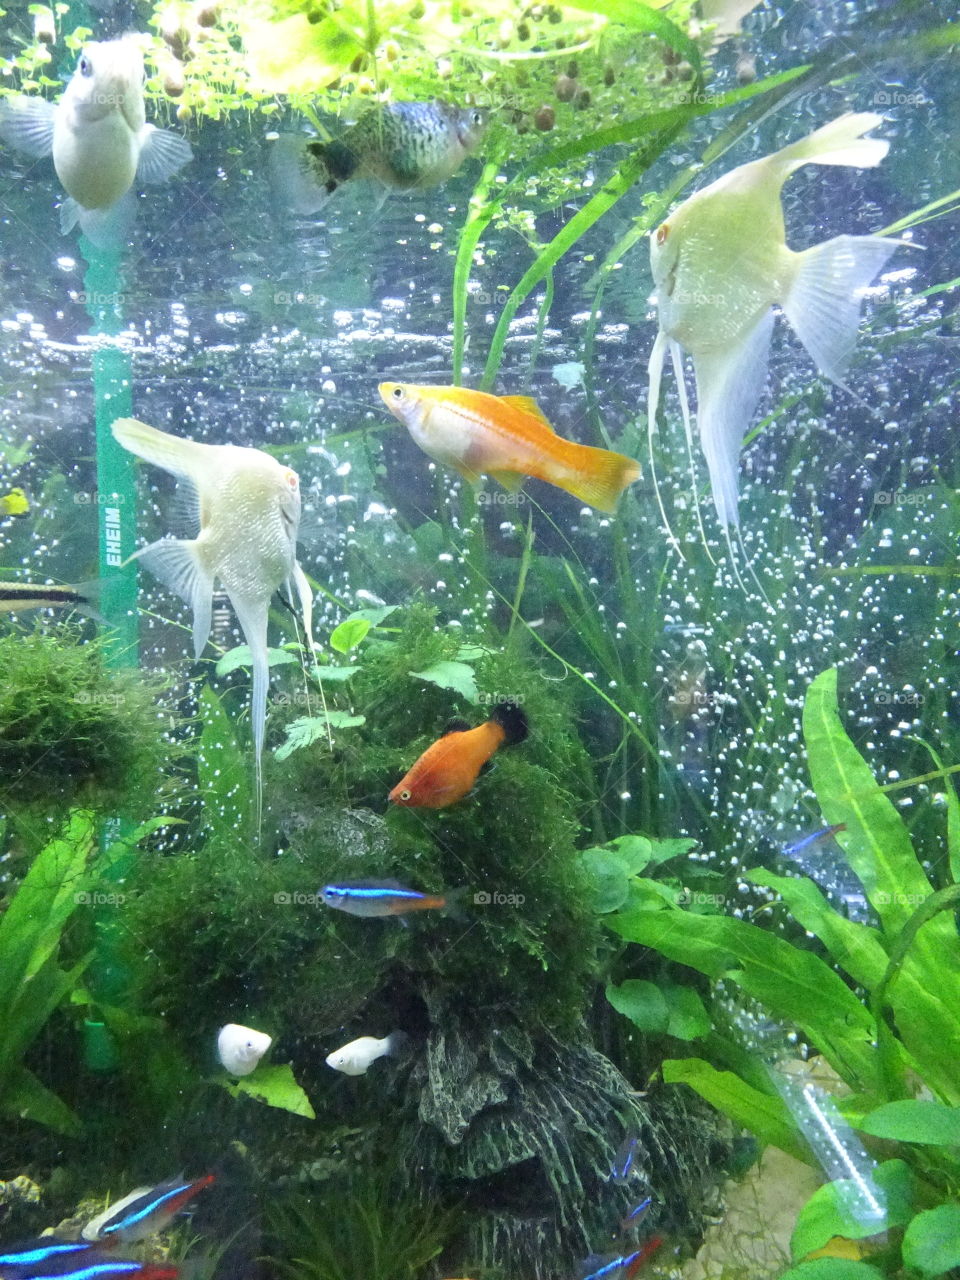 Aquarium, Underwater, Goldfish, Tank, Fish